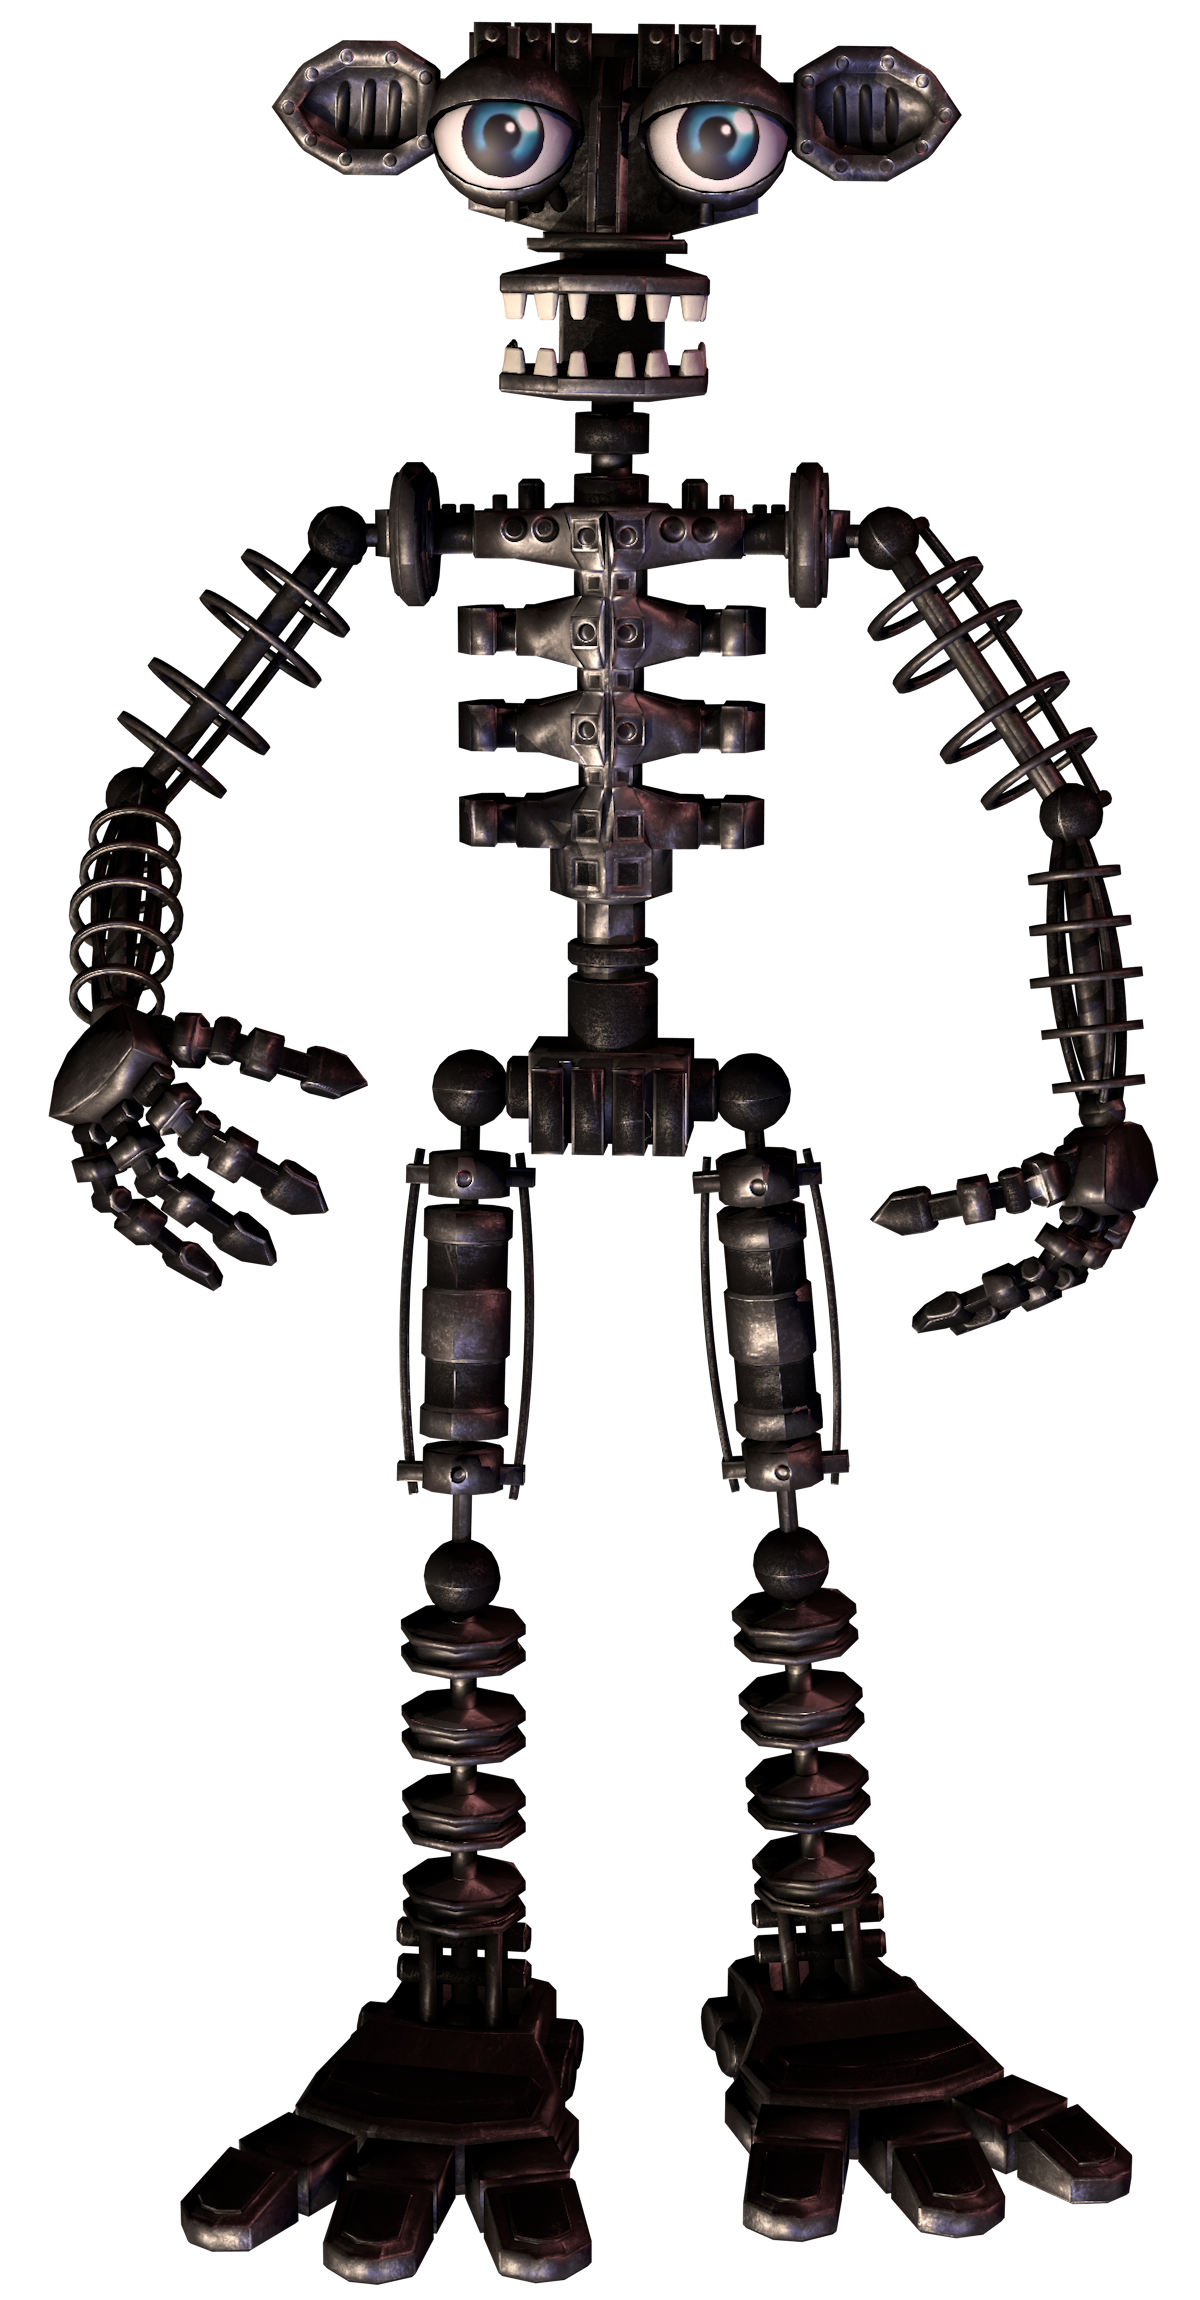 fnaf 1 endoskeleton full body